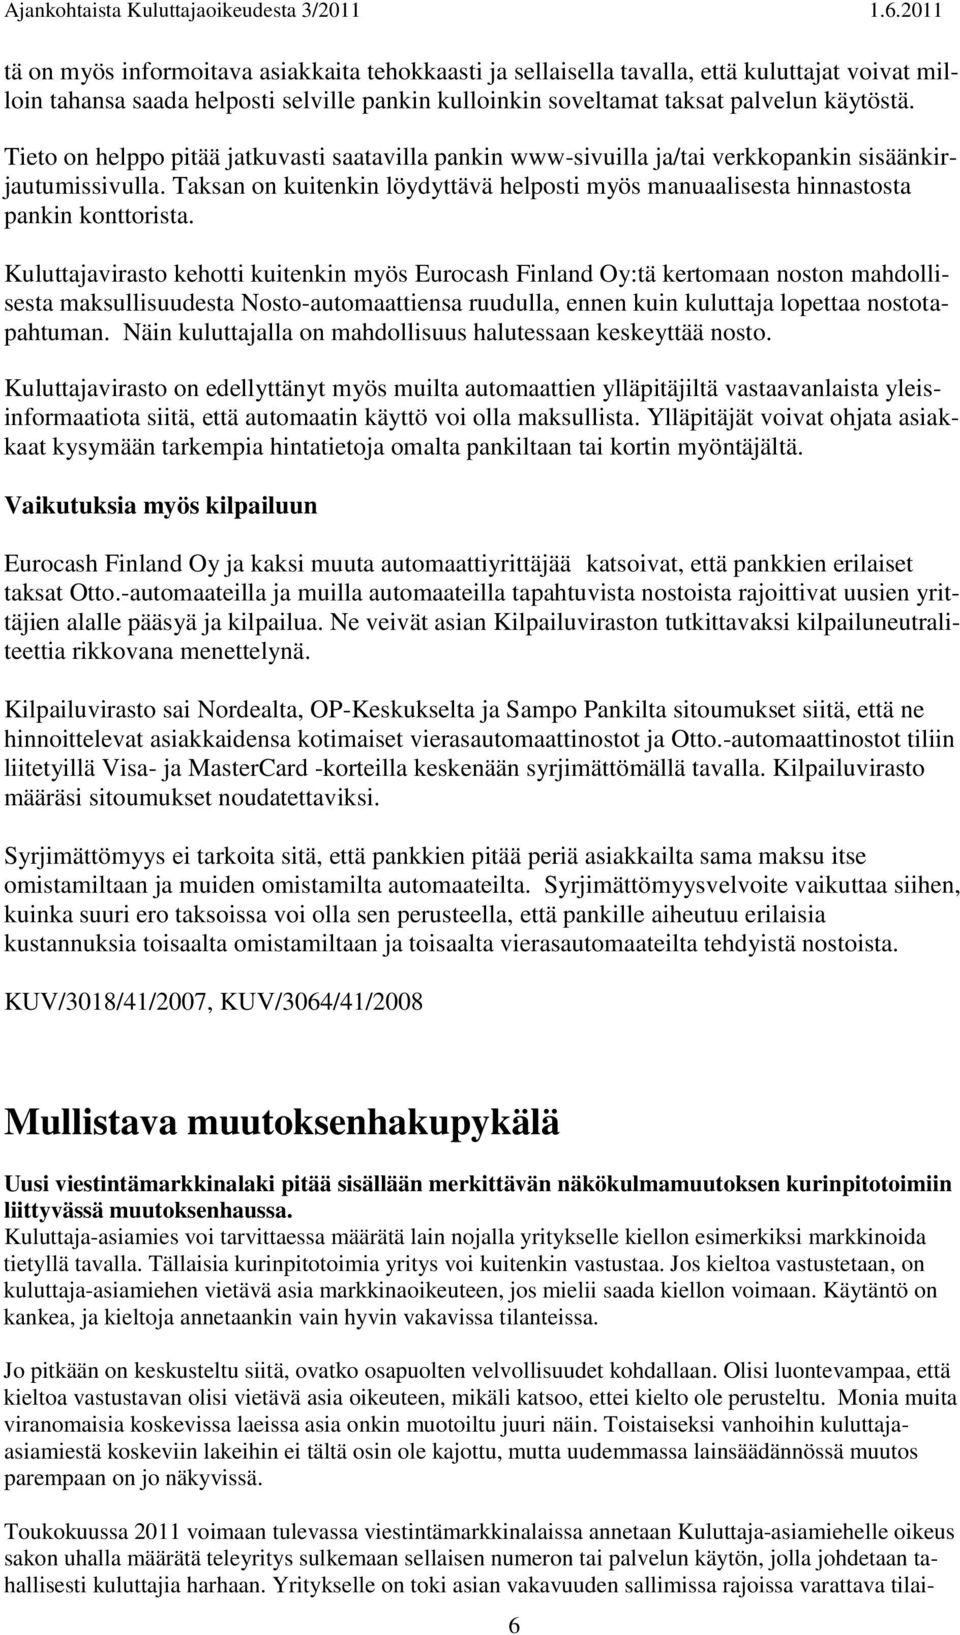 Kuluttajavirasto kehotti kuitenkin myös Eurocash Finland Oy:tä kertomaan noston mahdollisesta maksullisuudesta Nosto-automaattiensa ruudulla, ennen kuin kuluttaja lopettaa nostotapahtuman.